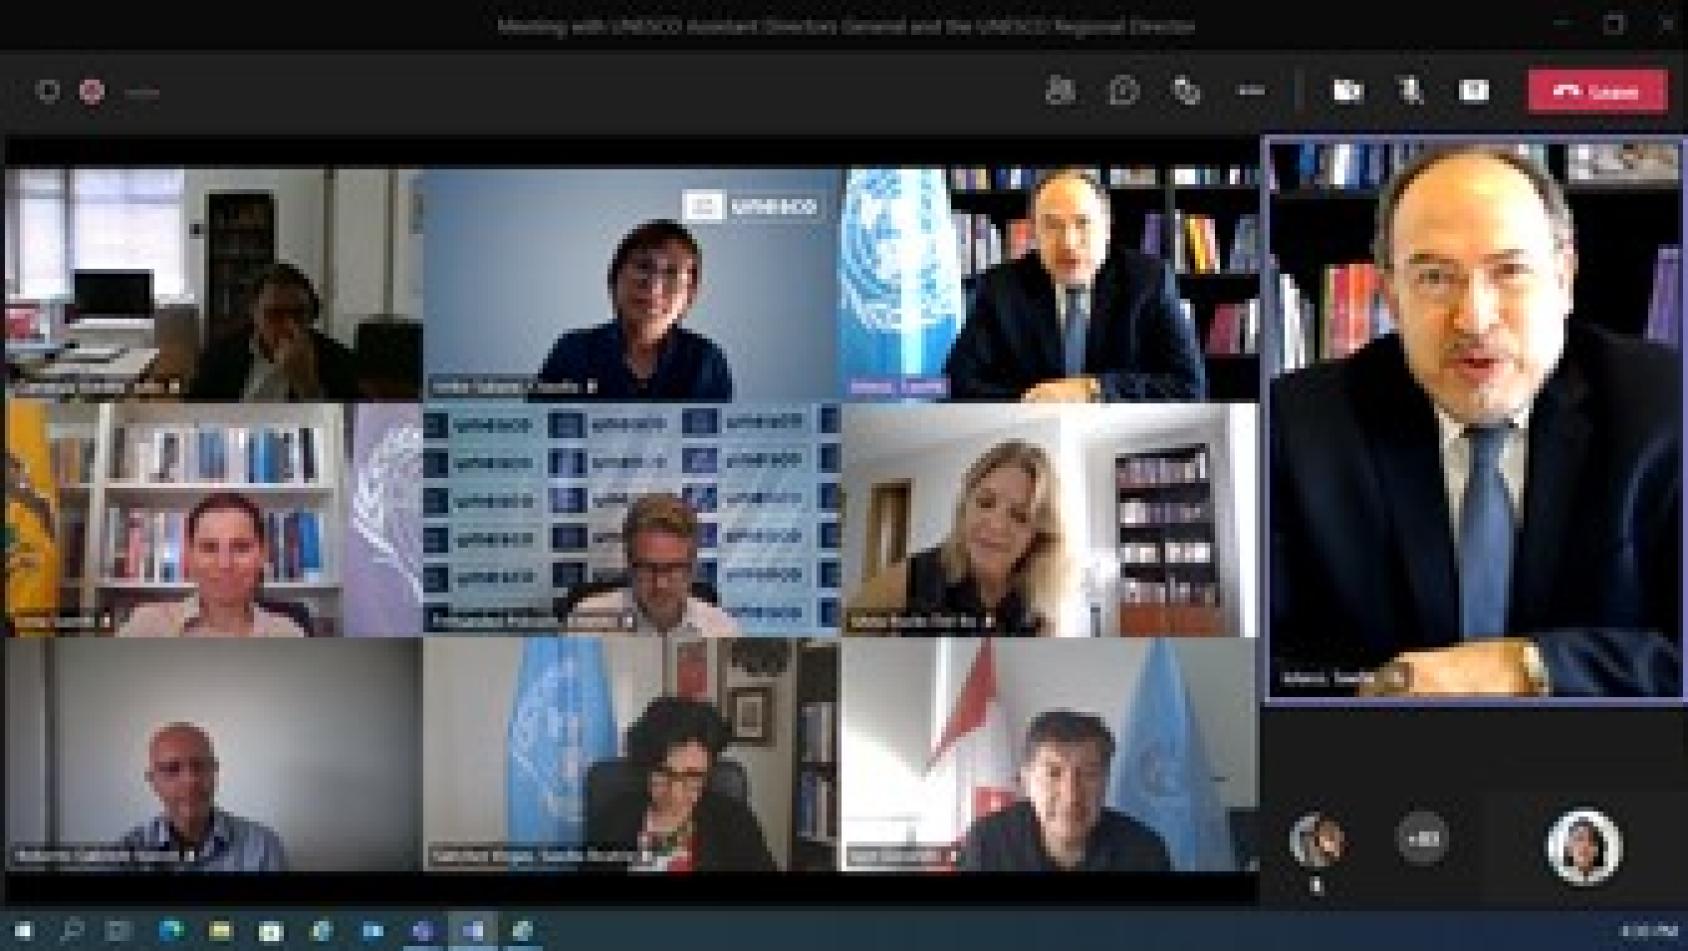 Capture d'écran montrant des personnes assistant à une session d'information virtuelle organisée par l'UNESCO.